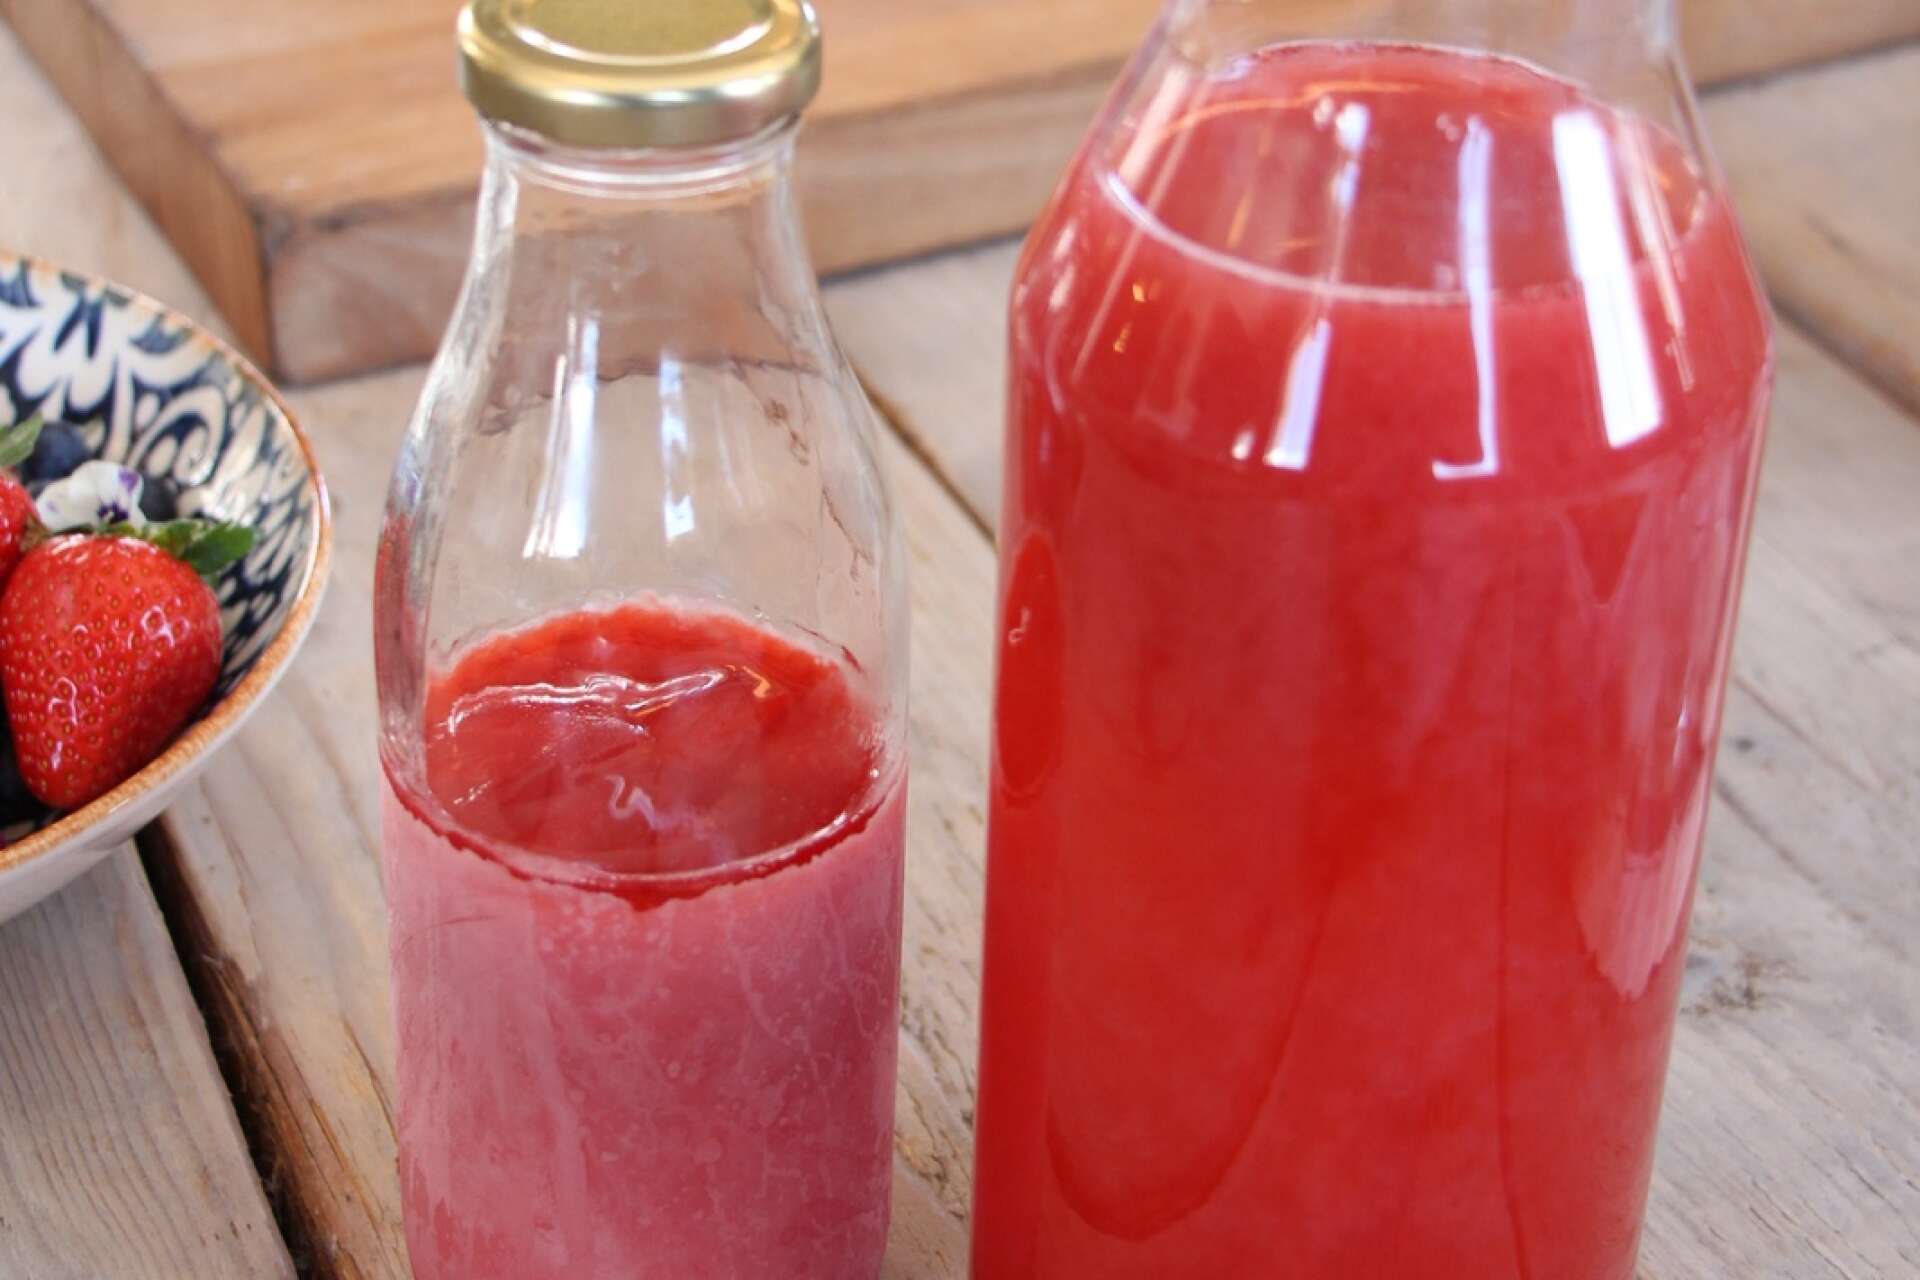 Fyll en flaska med kallrörd jordgubbssaft till hälften. Lägg i frysen över natten. Fyll upp dagen därpå med mer saft. Nu håller sig drycken kall länge.